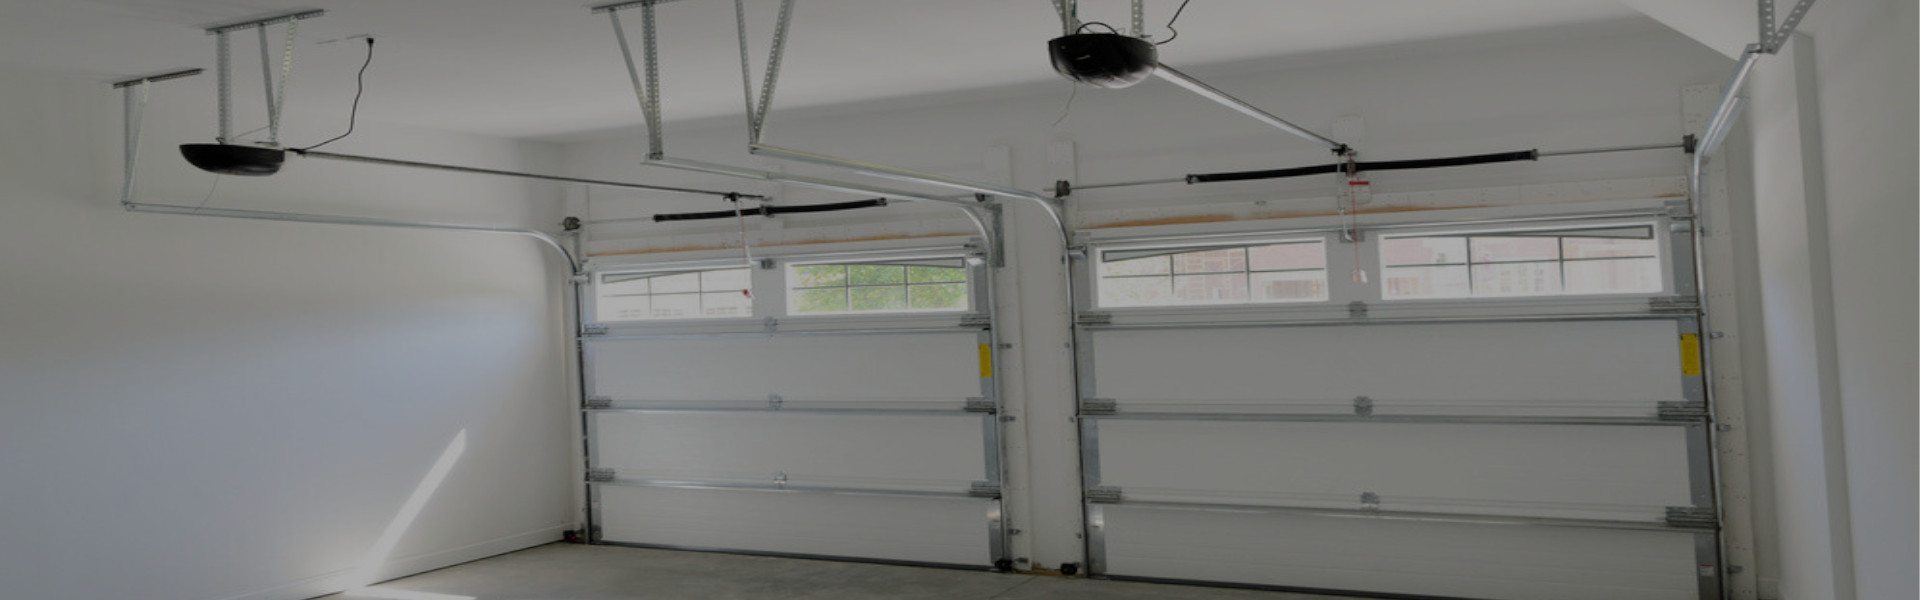 Slider Garage Door Repair, Glaziers in Darenth, Bean, DA2